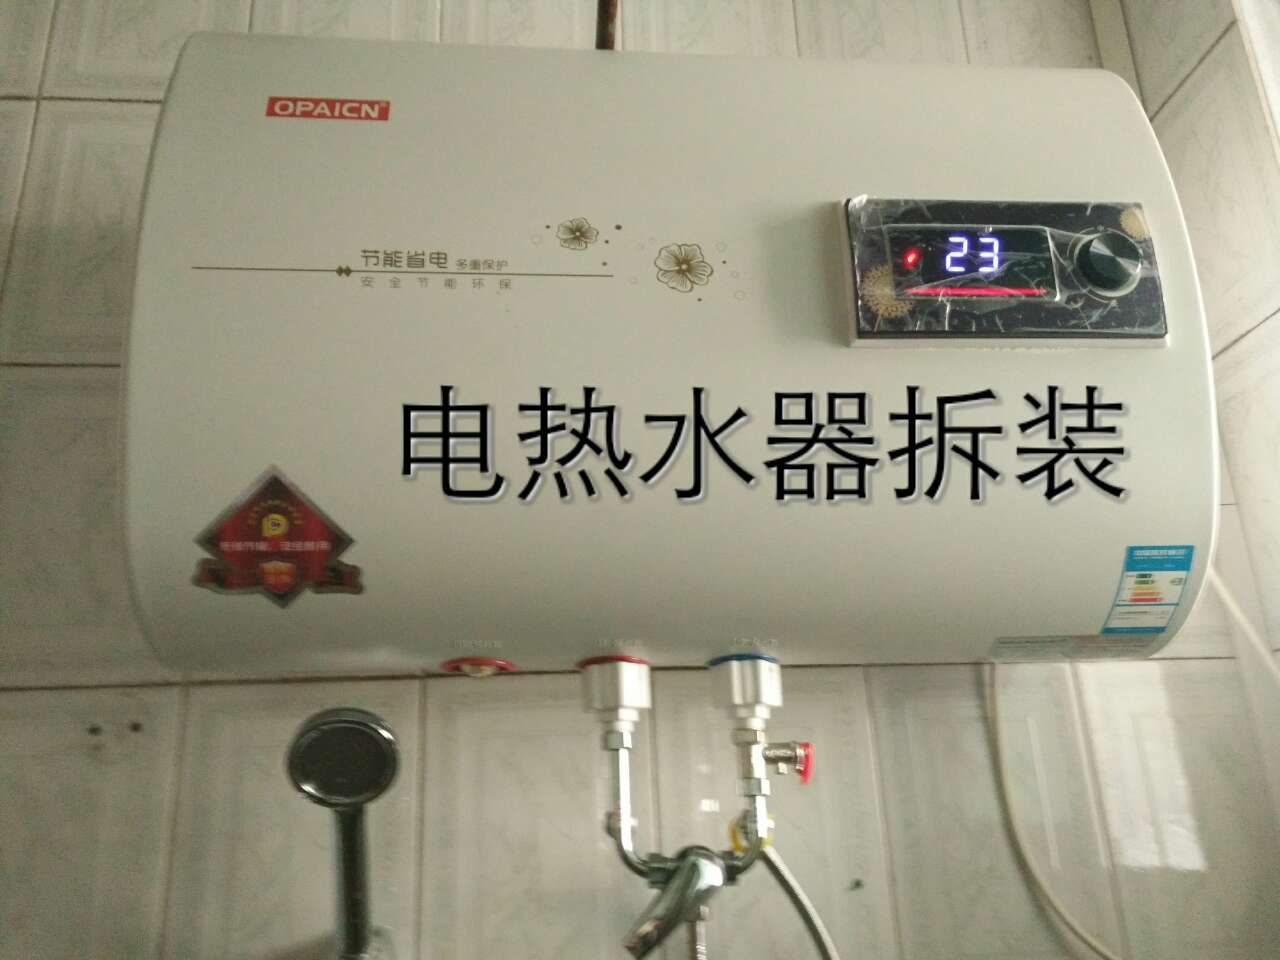 电热水器安装管路图,热水器暗管安装效果图 - 伤感说说吧